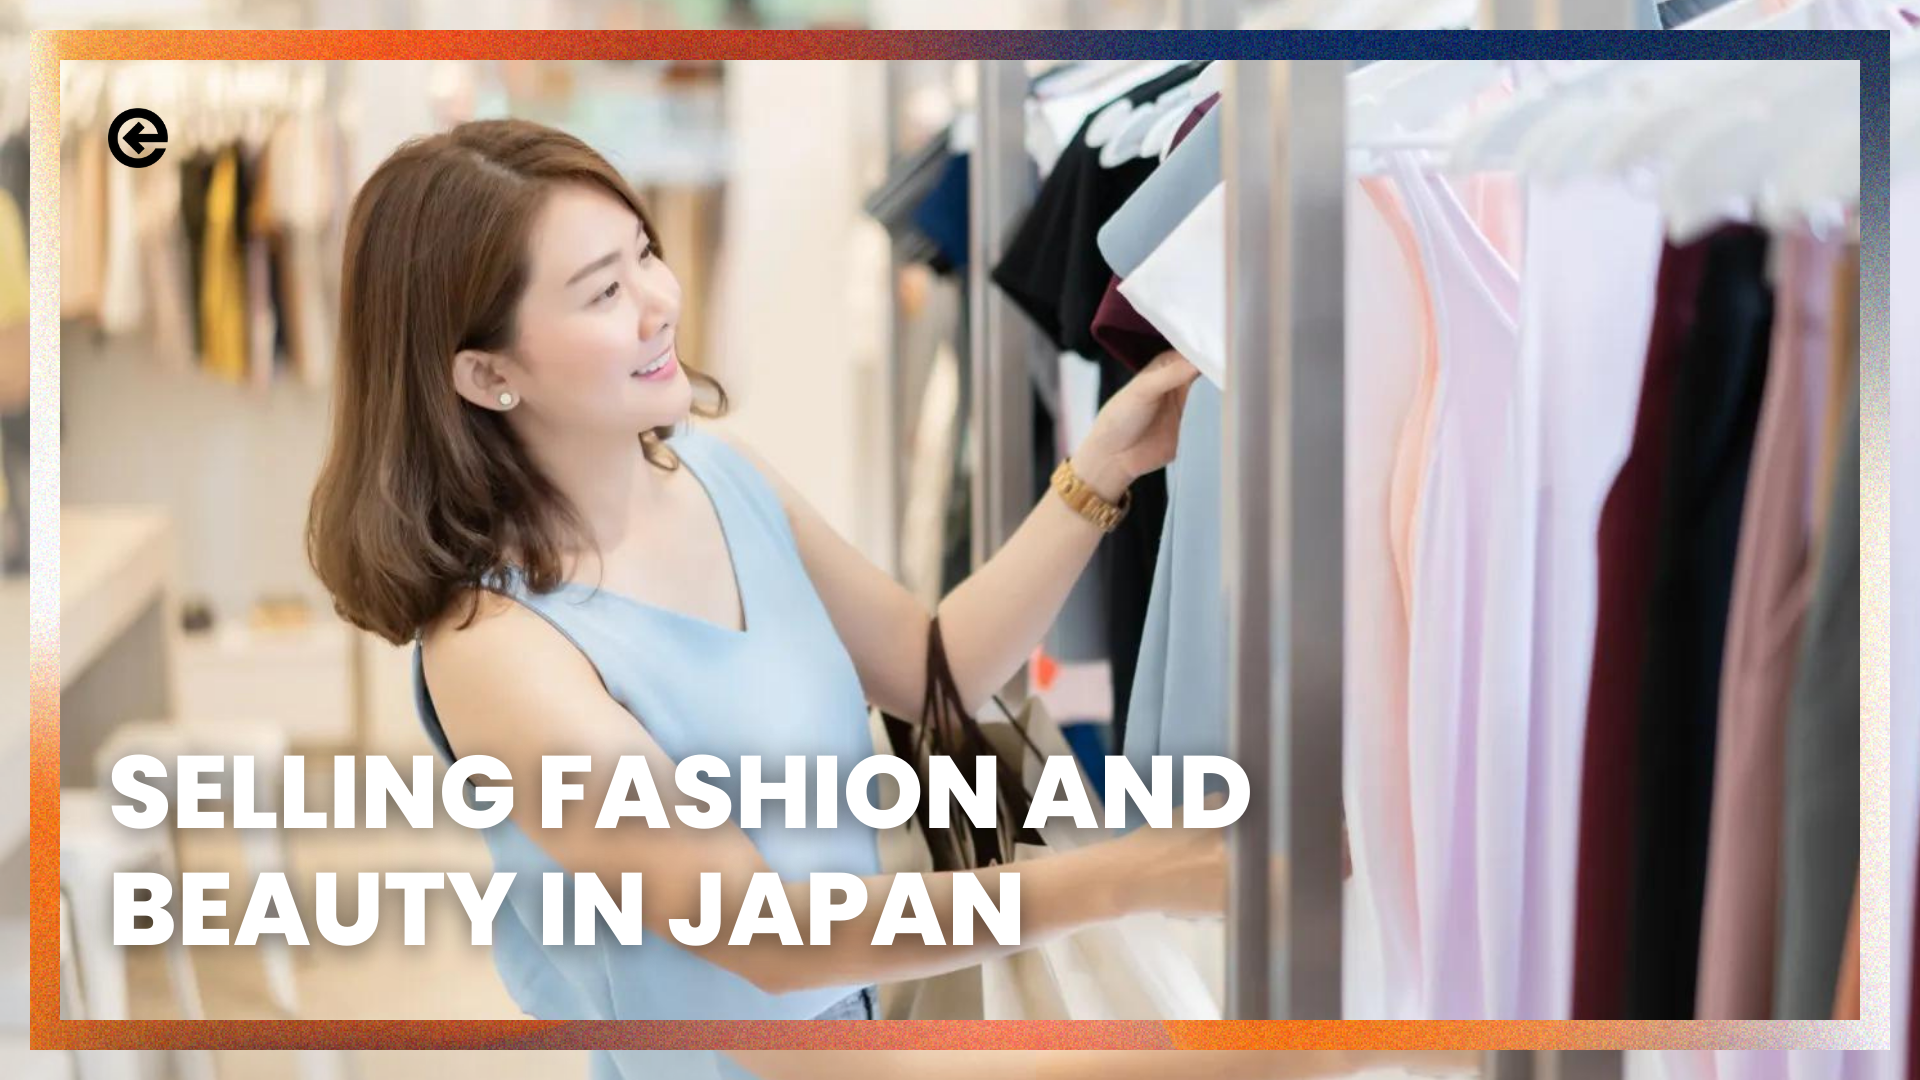 Verkaufen von Mode und Schönheit in Japan